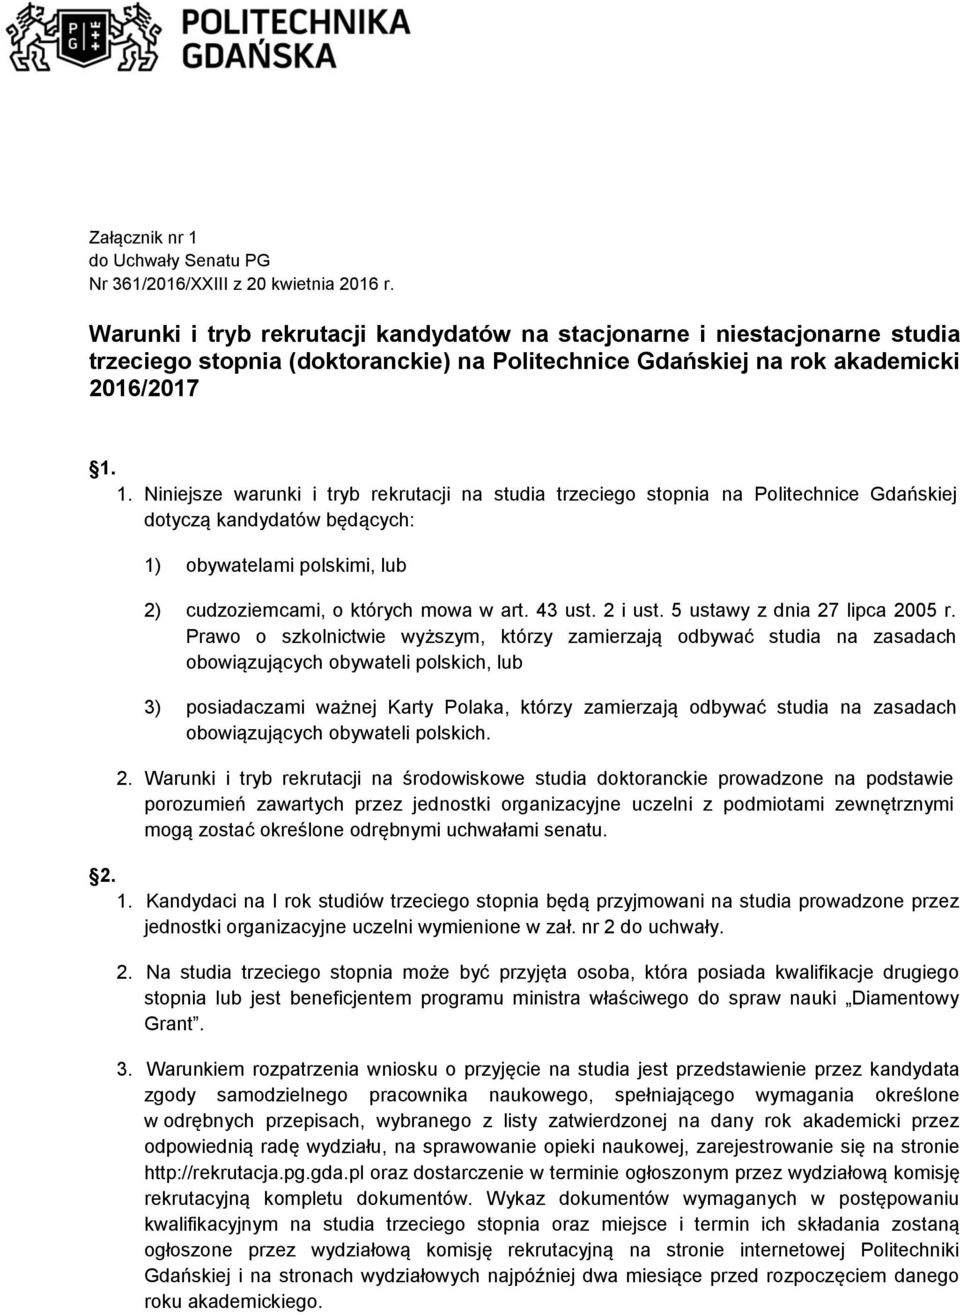 1. Niniejsze warunki i tryb rekrutacji na studia trzeciego stopnia na Politechnice Gdańskiej dotyczą kandydatów będących: 1) obywatelami polskimi, lub 2) cudzoziemcami, o których mowa w art. 43 ust.